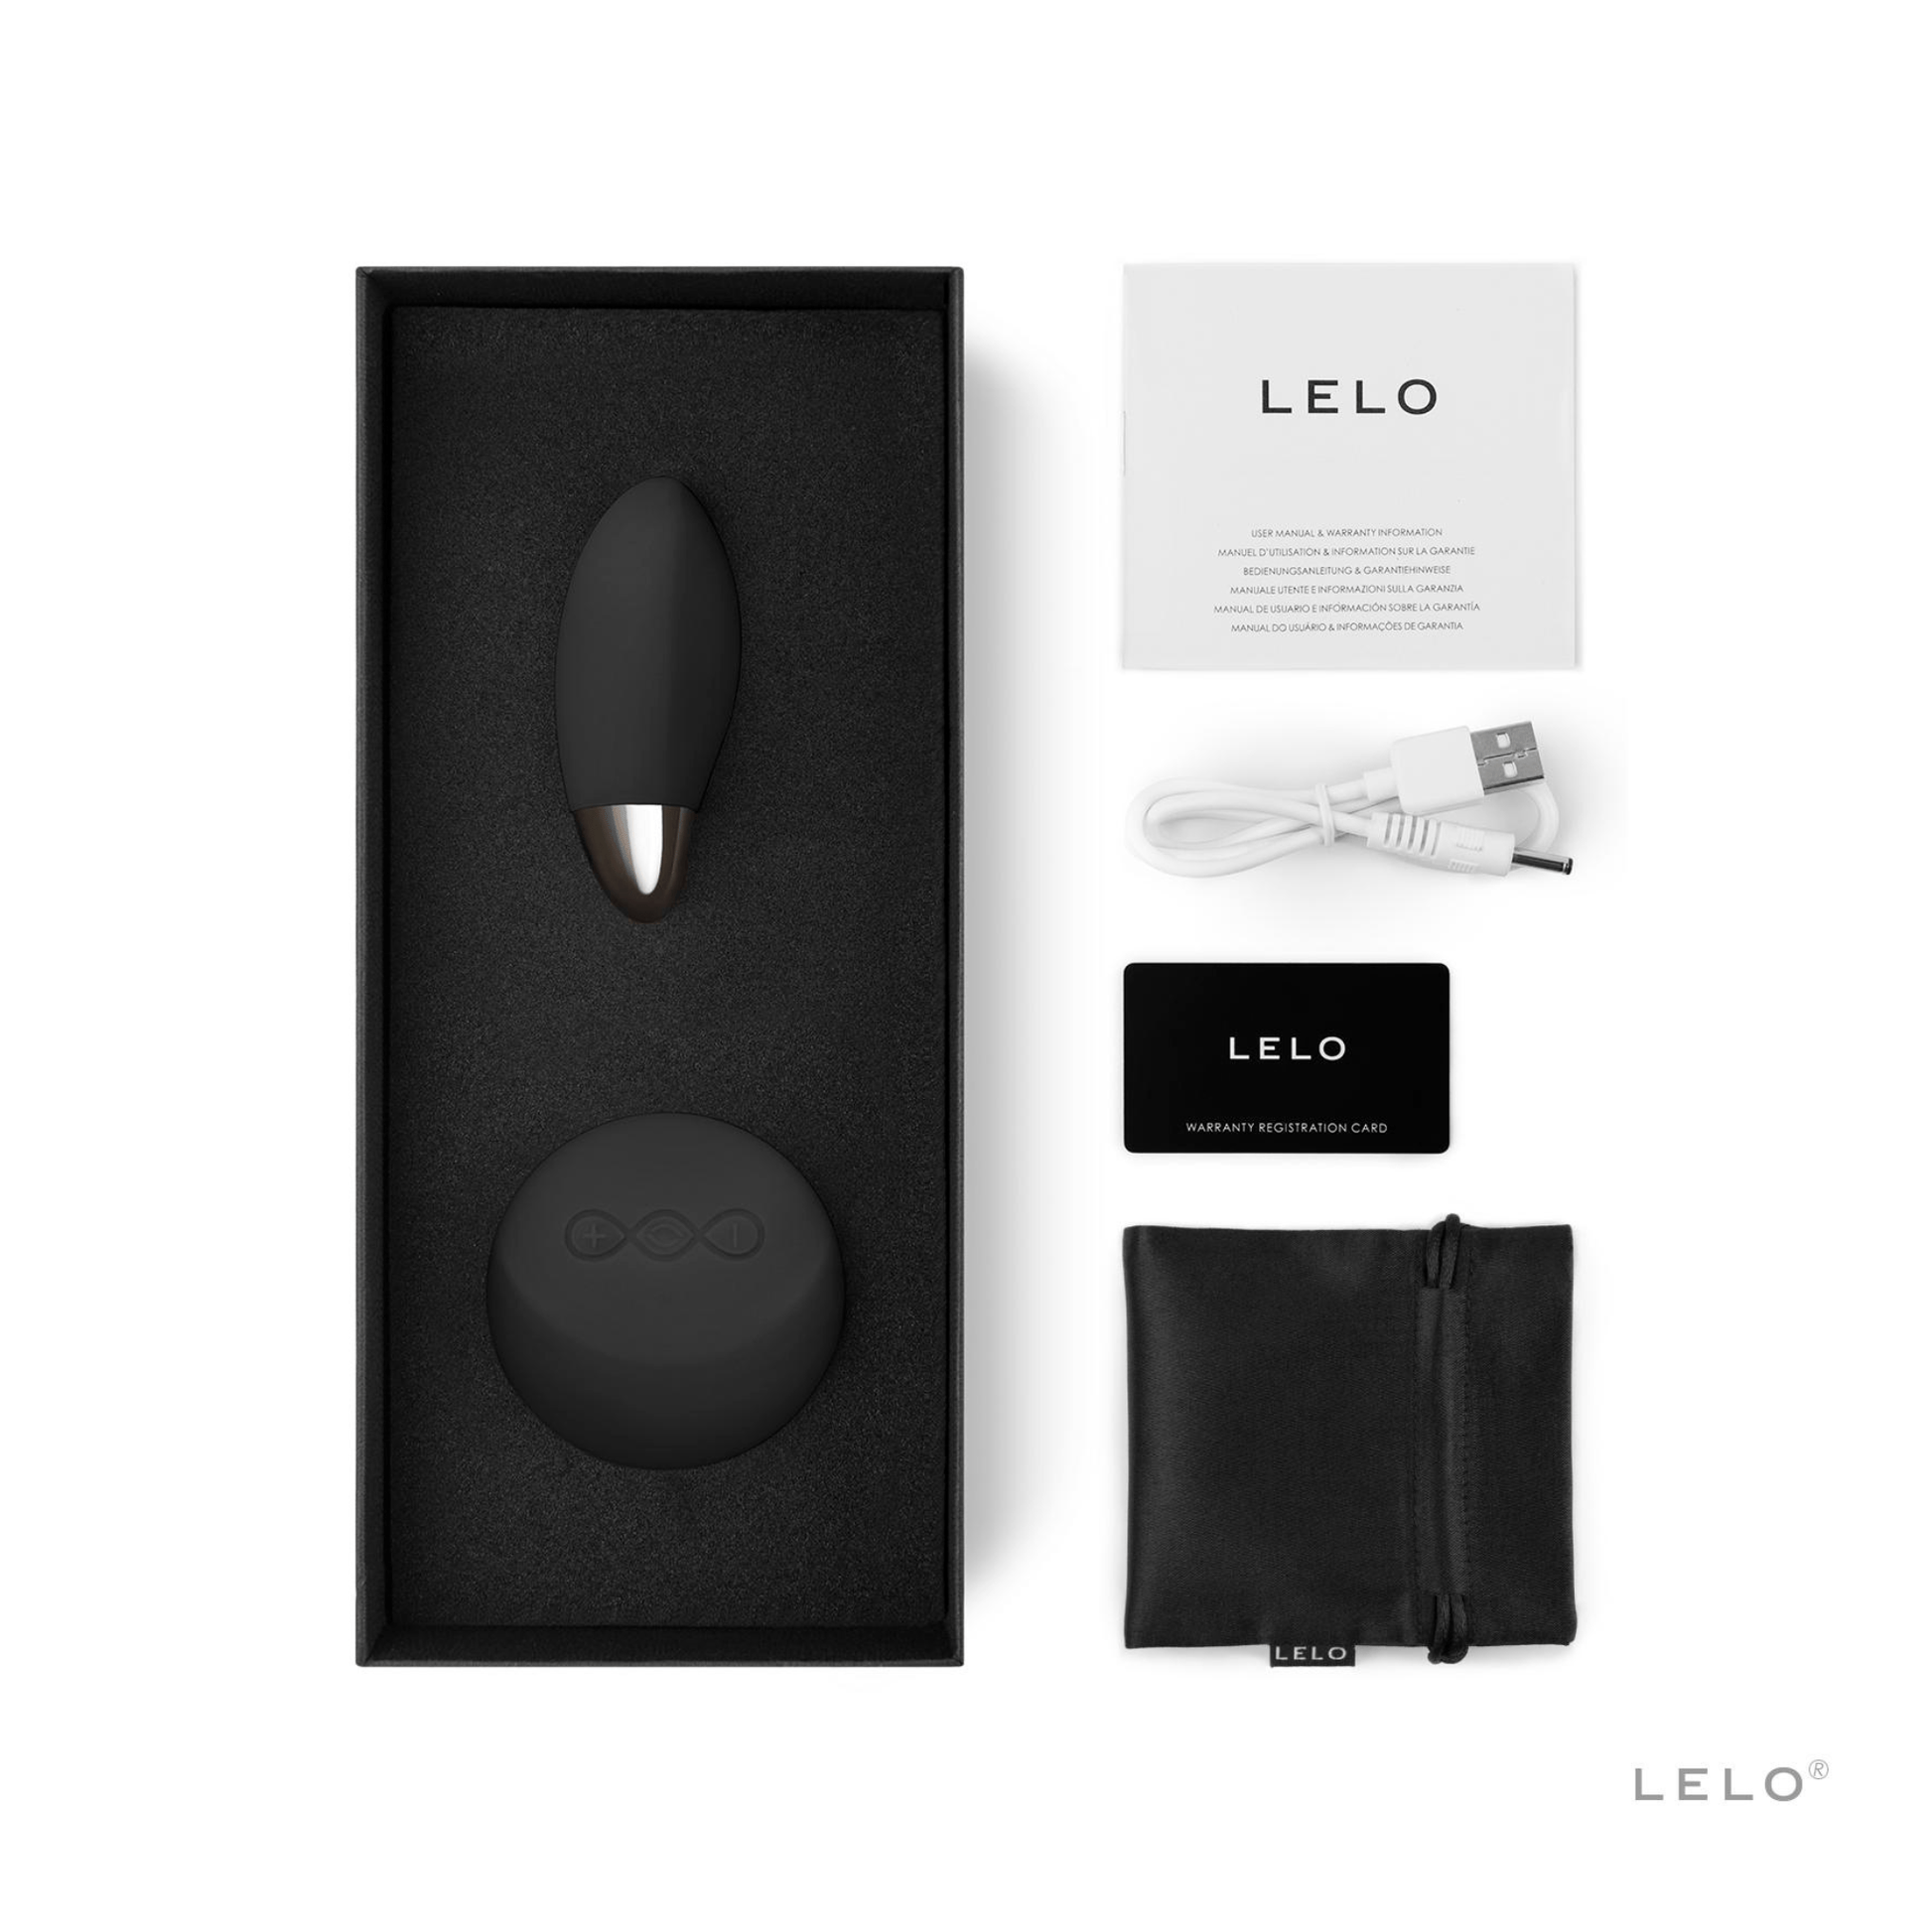 Élégance et innovation avec l'Oeuf vibrant Lyla 2 en noir par Lelo, offert par OhMyGodz.fr pour des moments intimes raffinés et une stimulation haut de gamme.